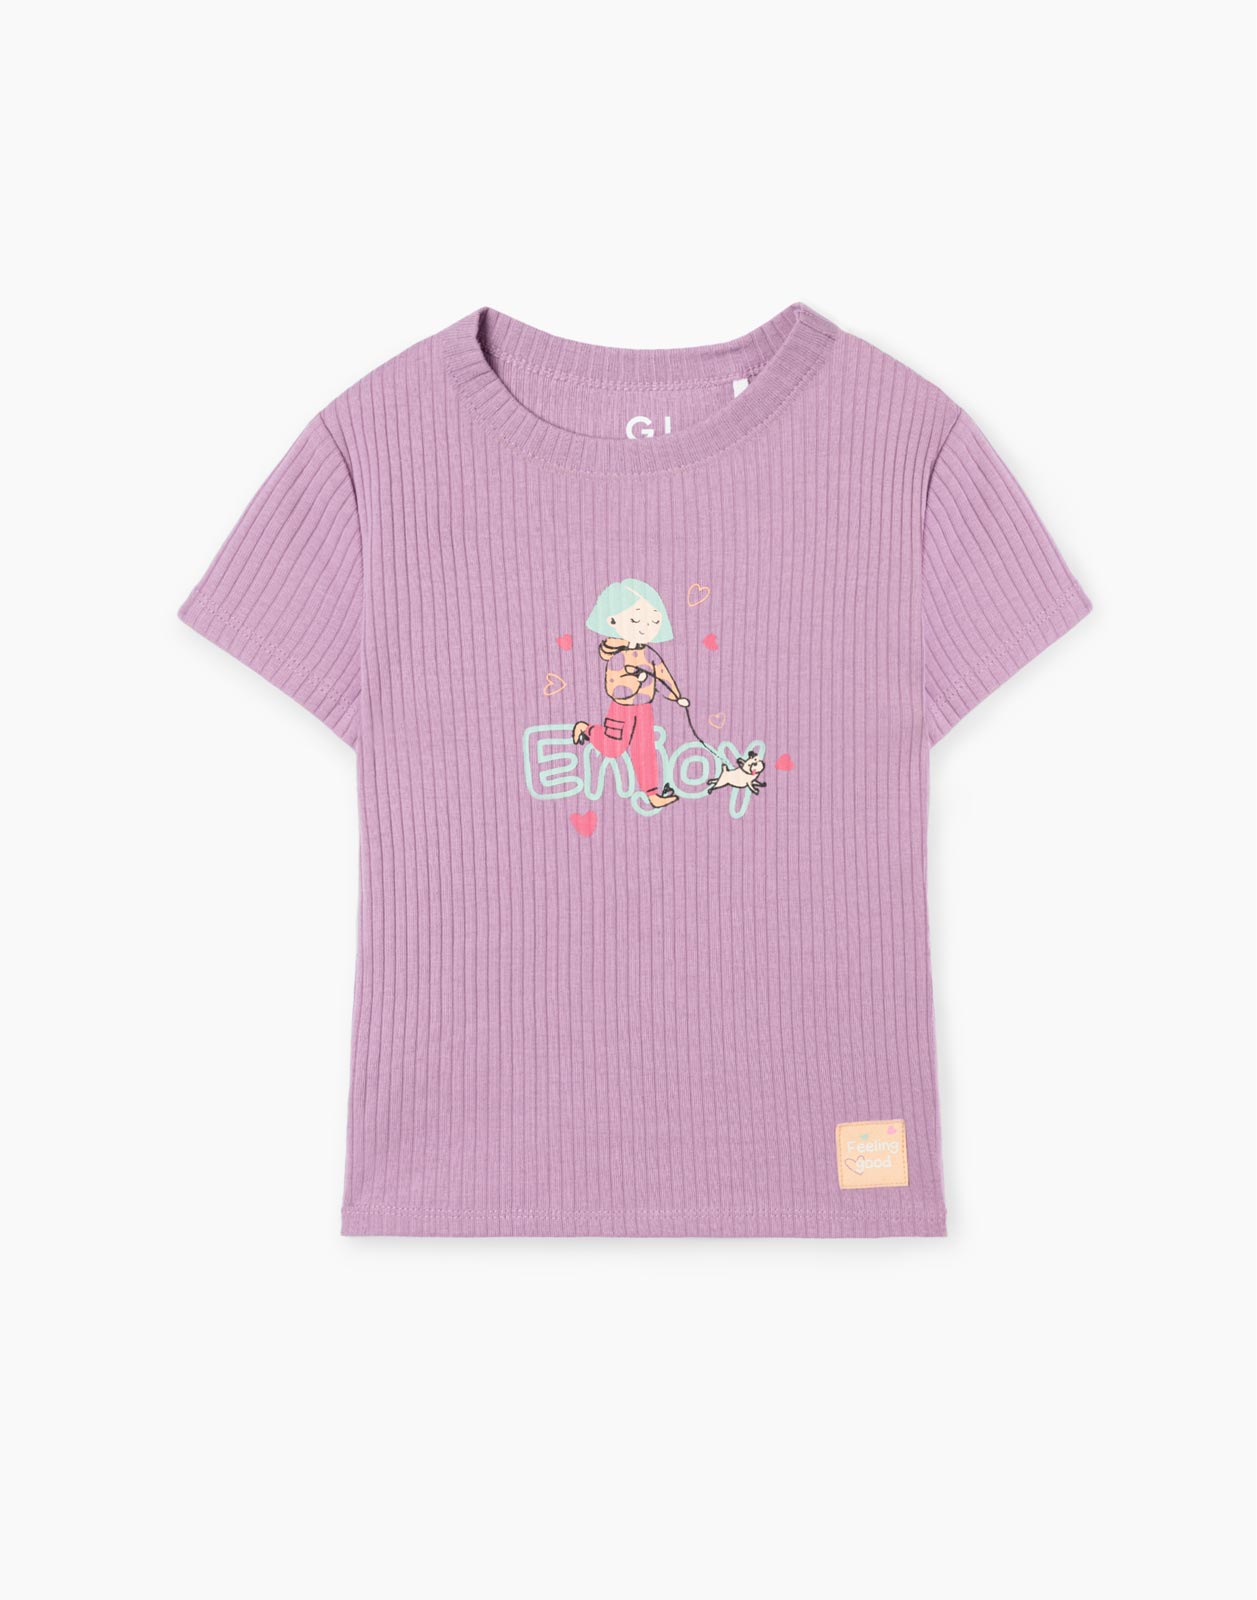 Фиолетовая приталенная футболка в рубчик с принтом для девочки GKT021478 4-5л/110